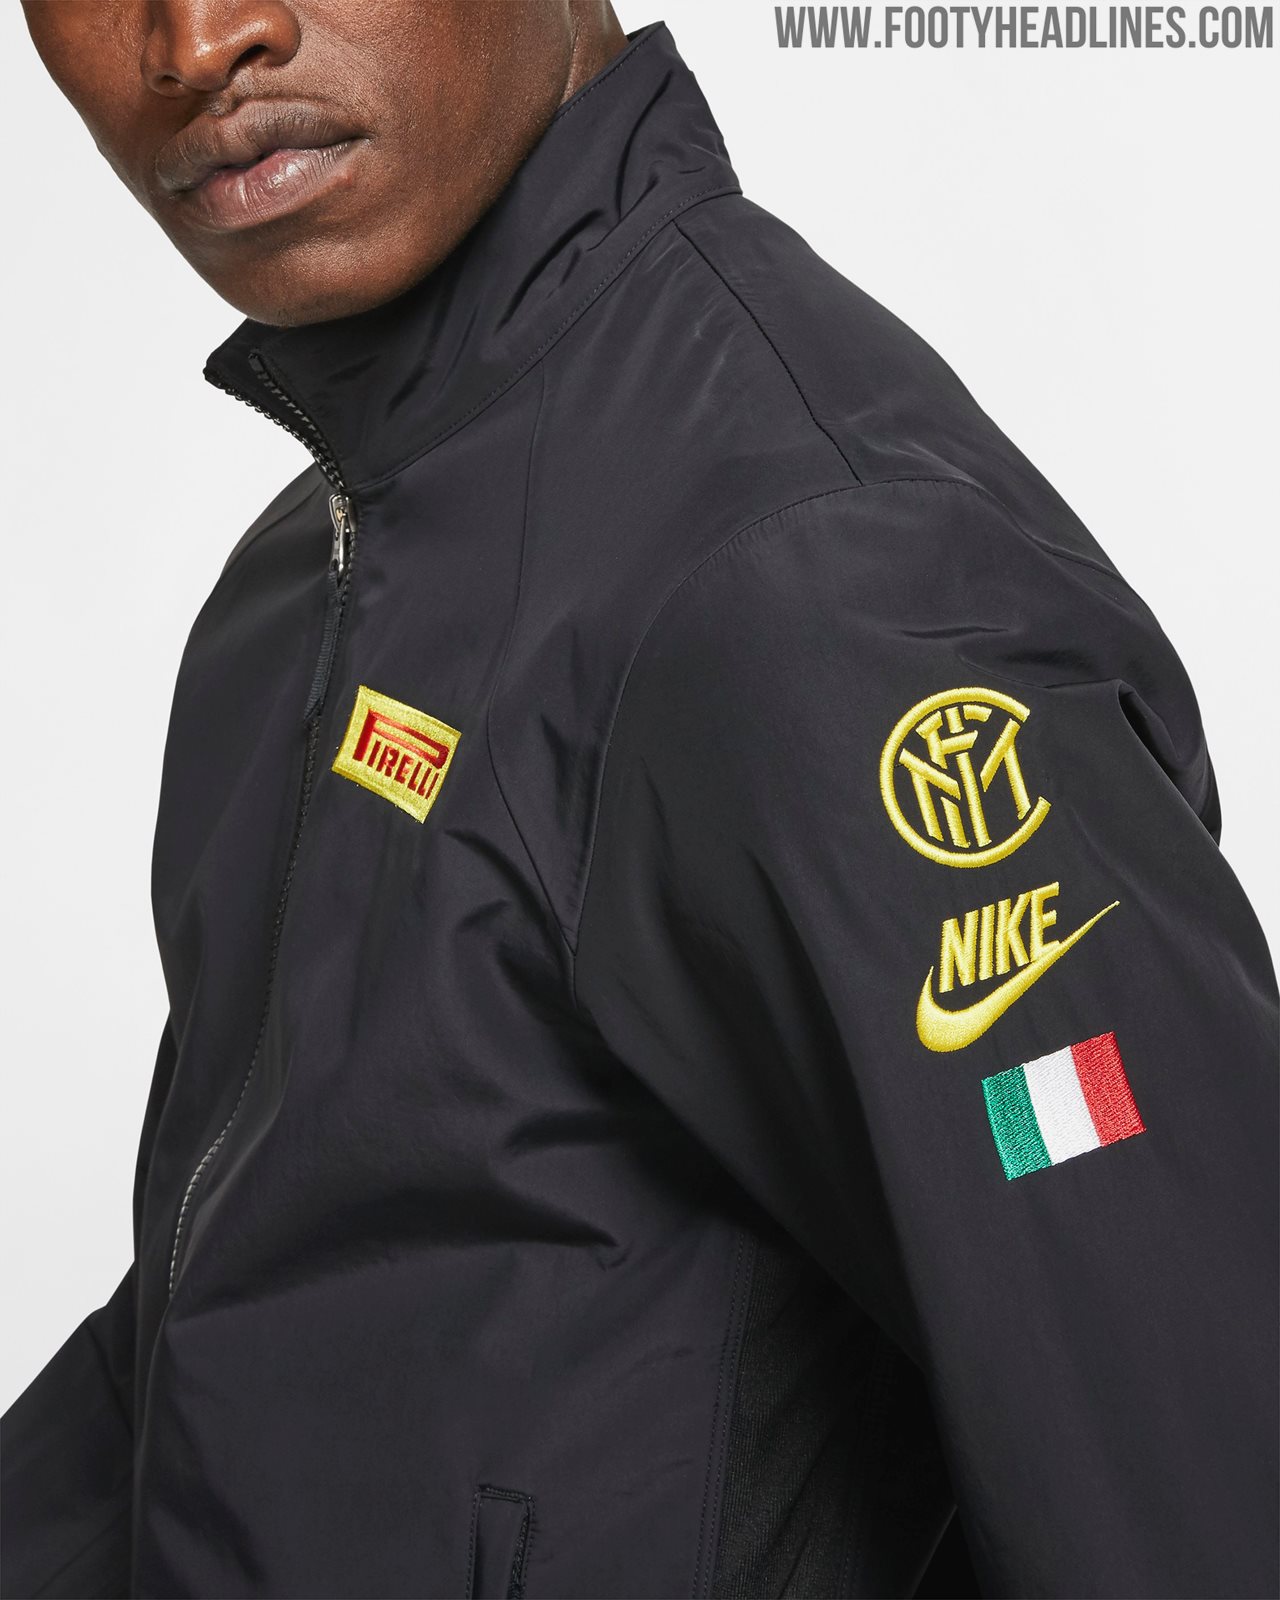 Estado saludo Tectónico Nike Inter Milan Pirelli Racing Collection Released - Footy Headlines